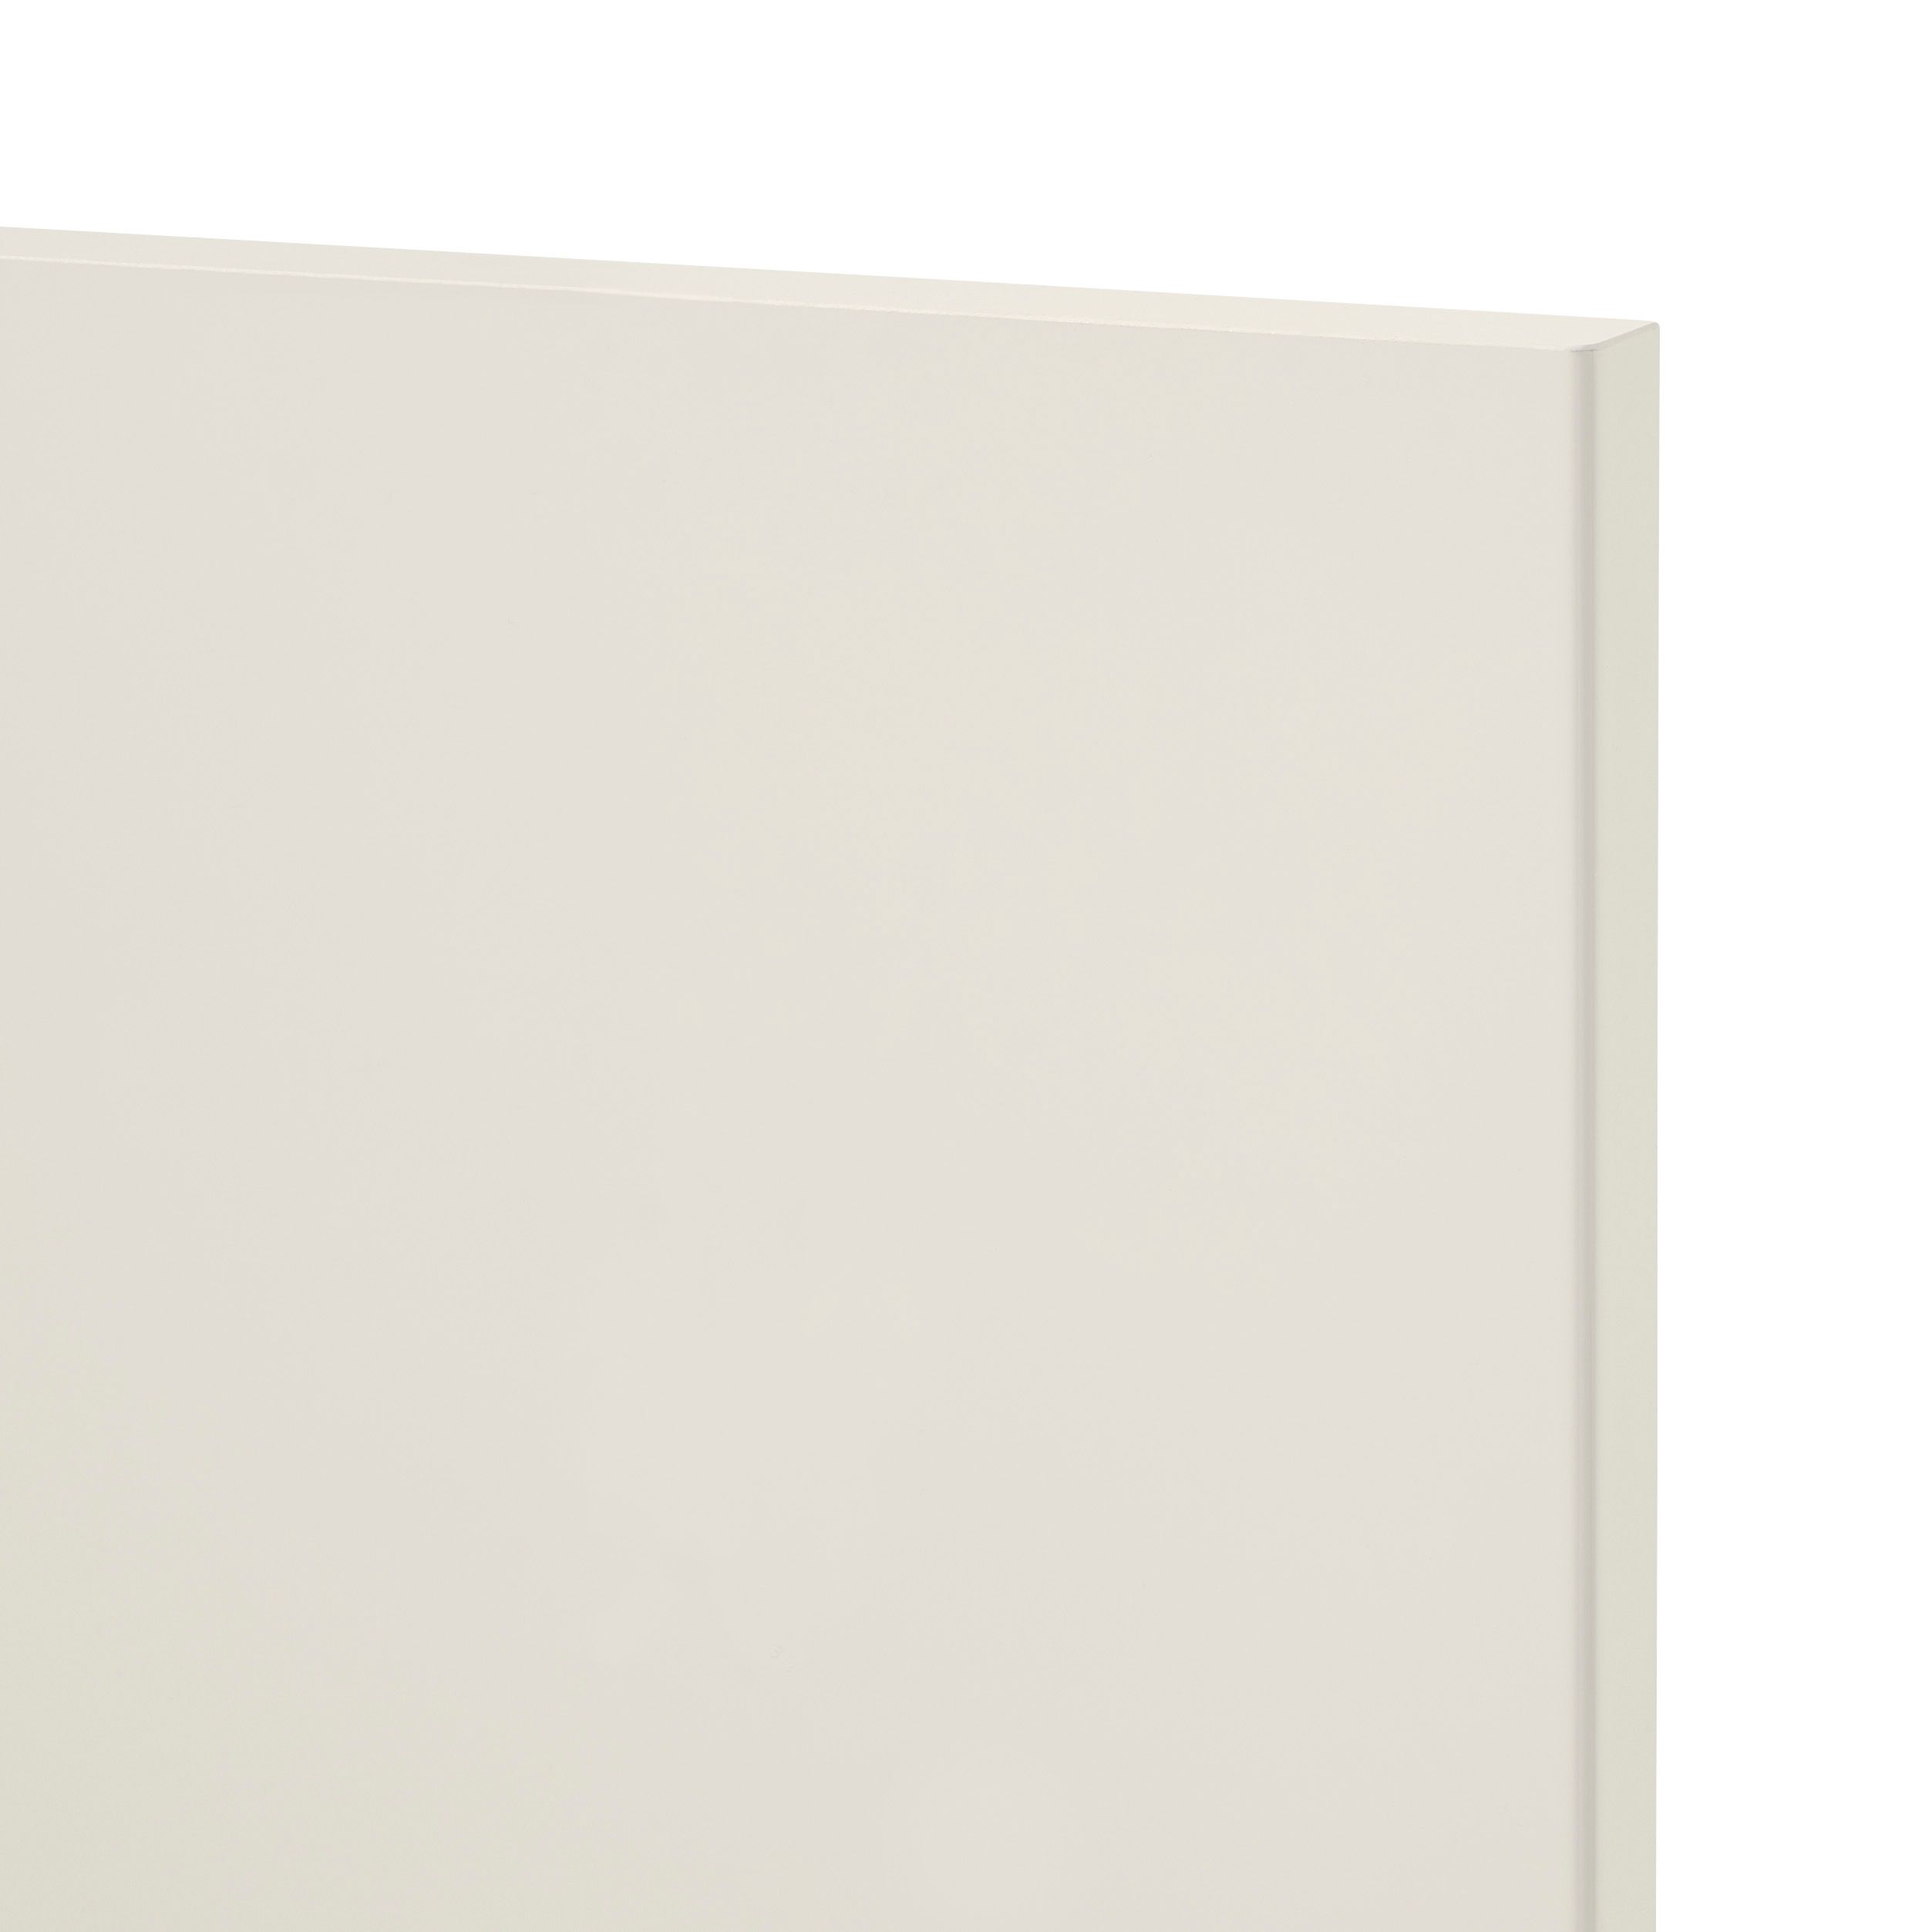 GoodHome Stevia Gloss cream slab Larder Cabinet door (W)500mm (H)1287mm (T)18mm